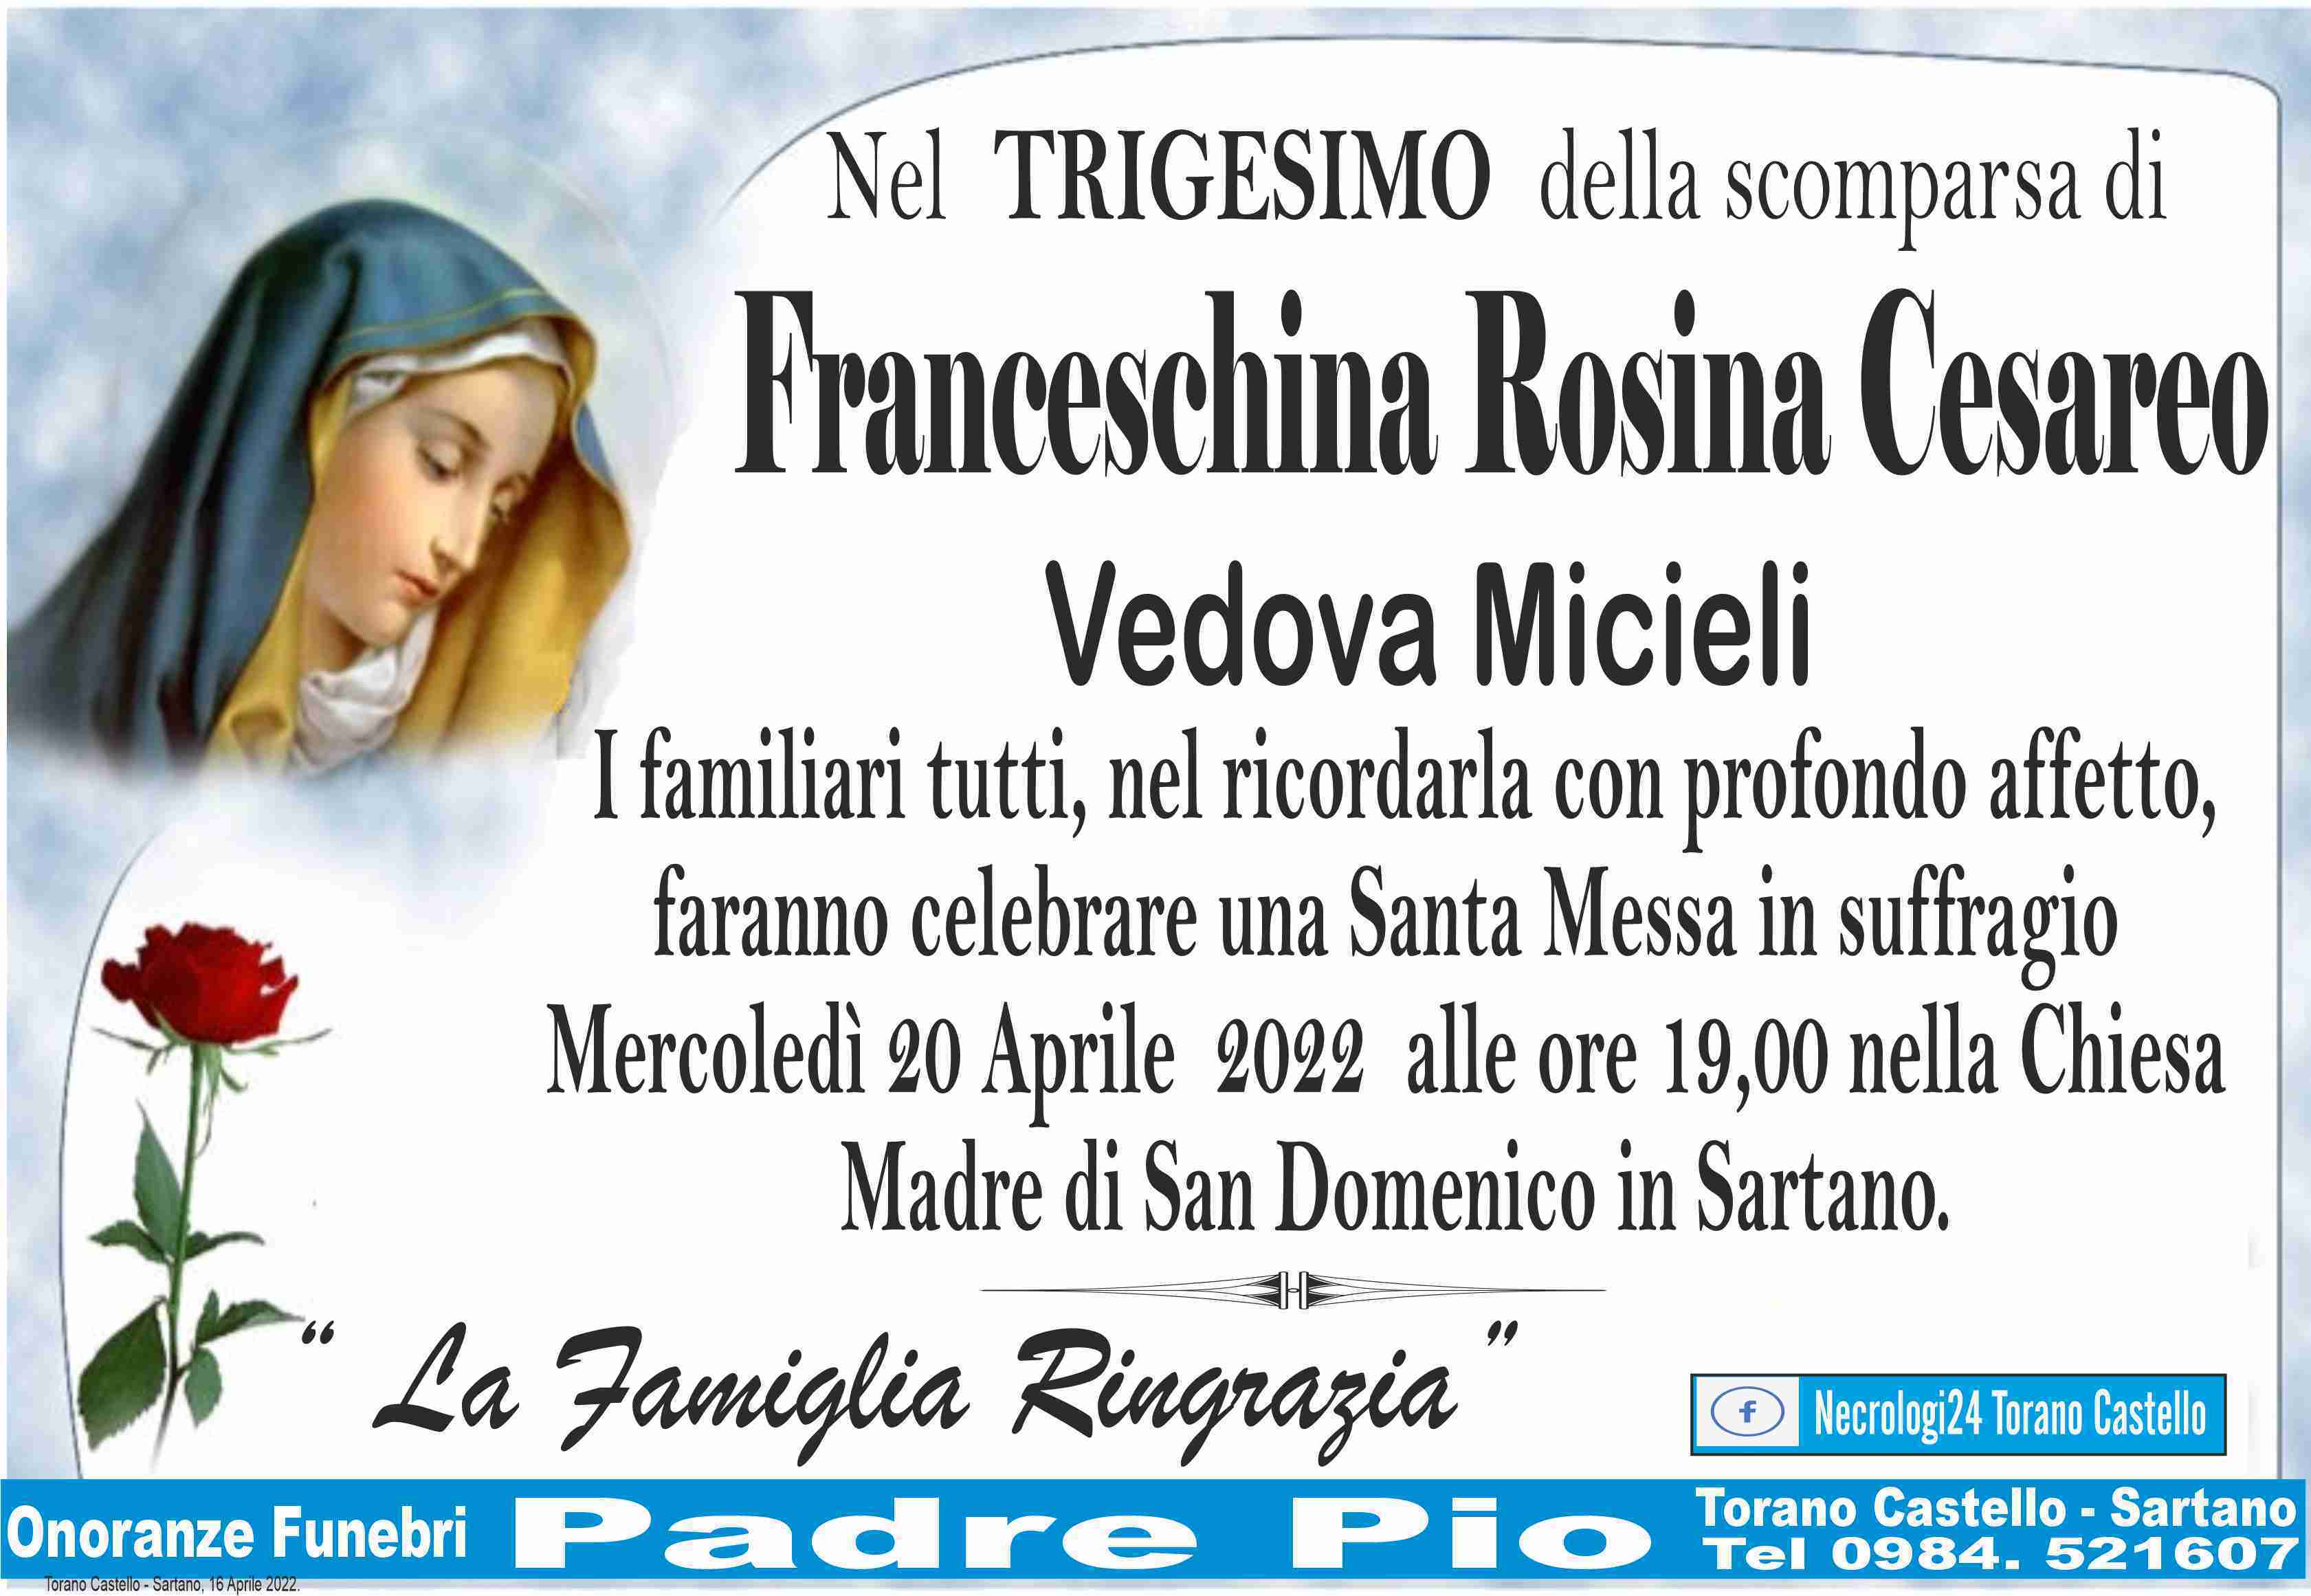 Franceschina Rosina Cesareo